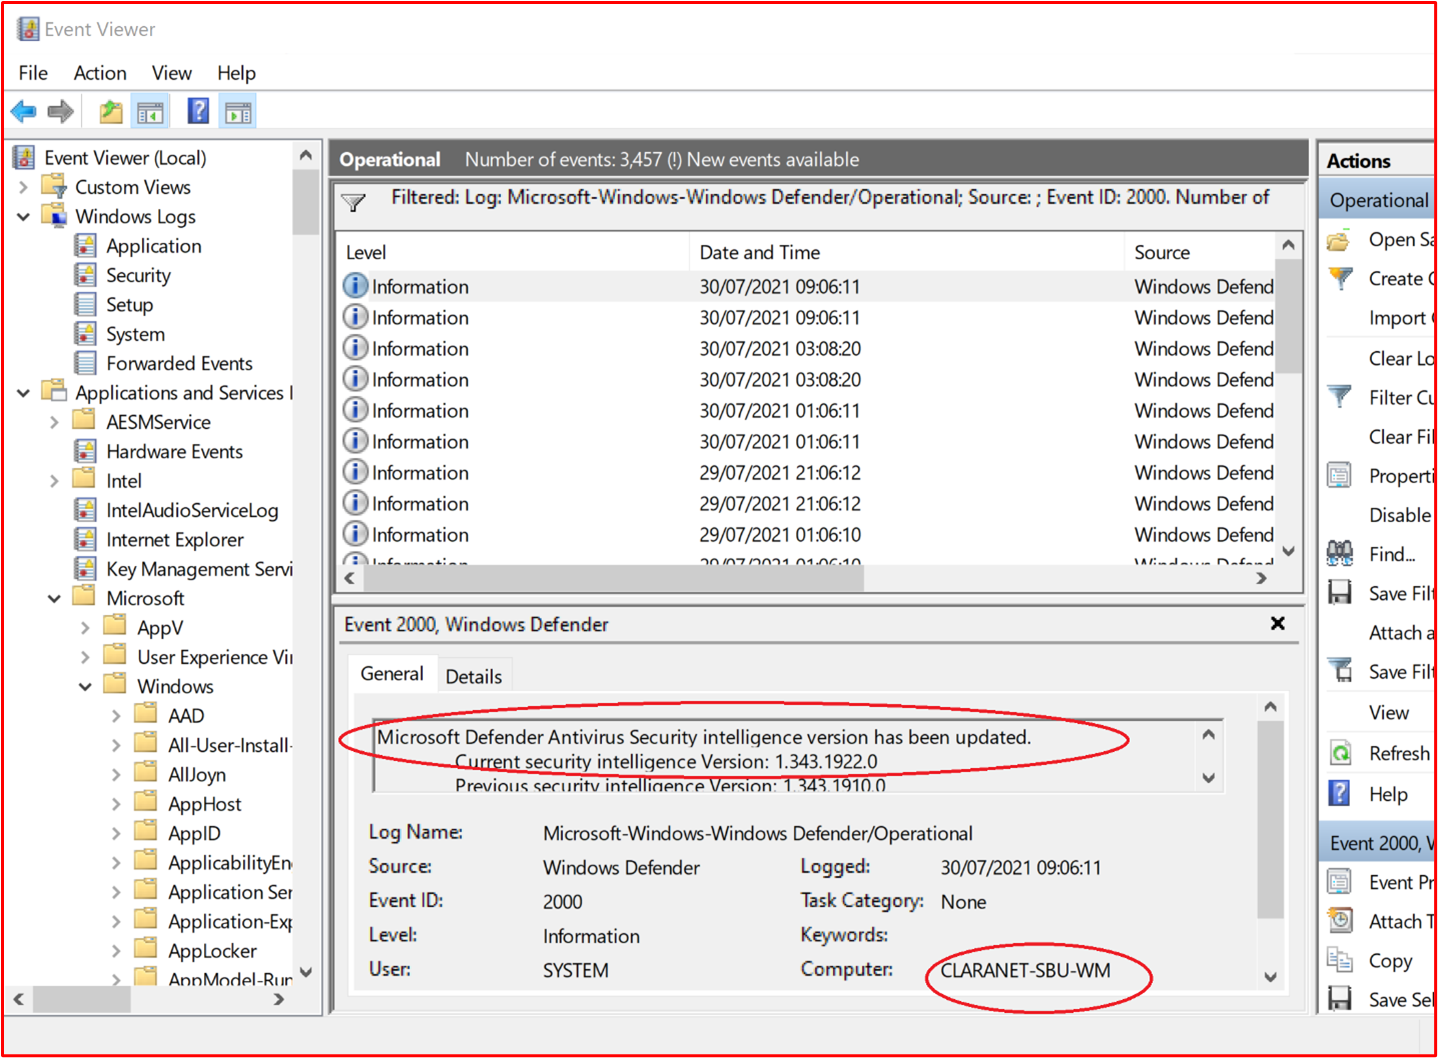 スクリーンショットは、少なくとも毎日更新するMicrosoft Defenderを示しています。'Event 2000, Windows Defender'